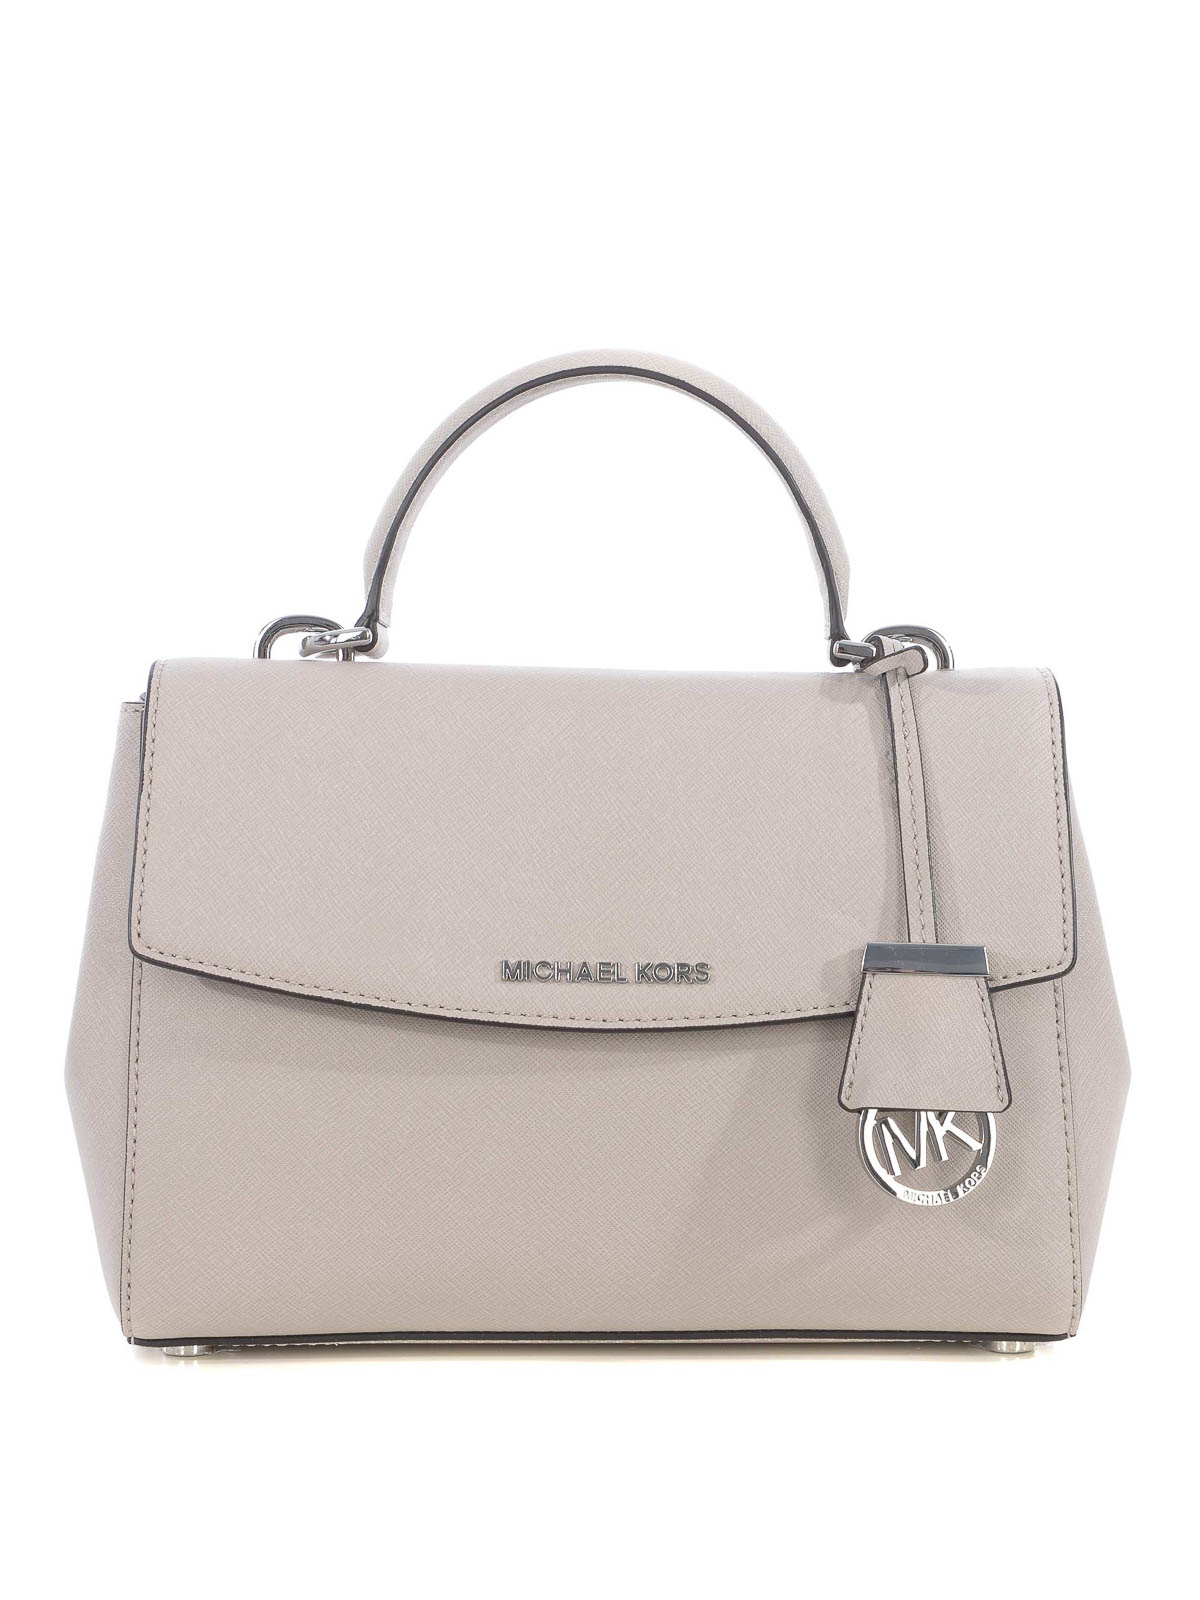 Michael Kors Michael Kors Ava Small Bags & Handbags for Women for